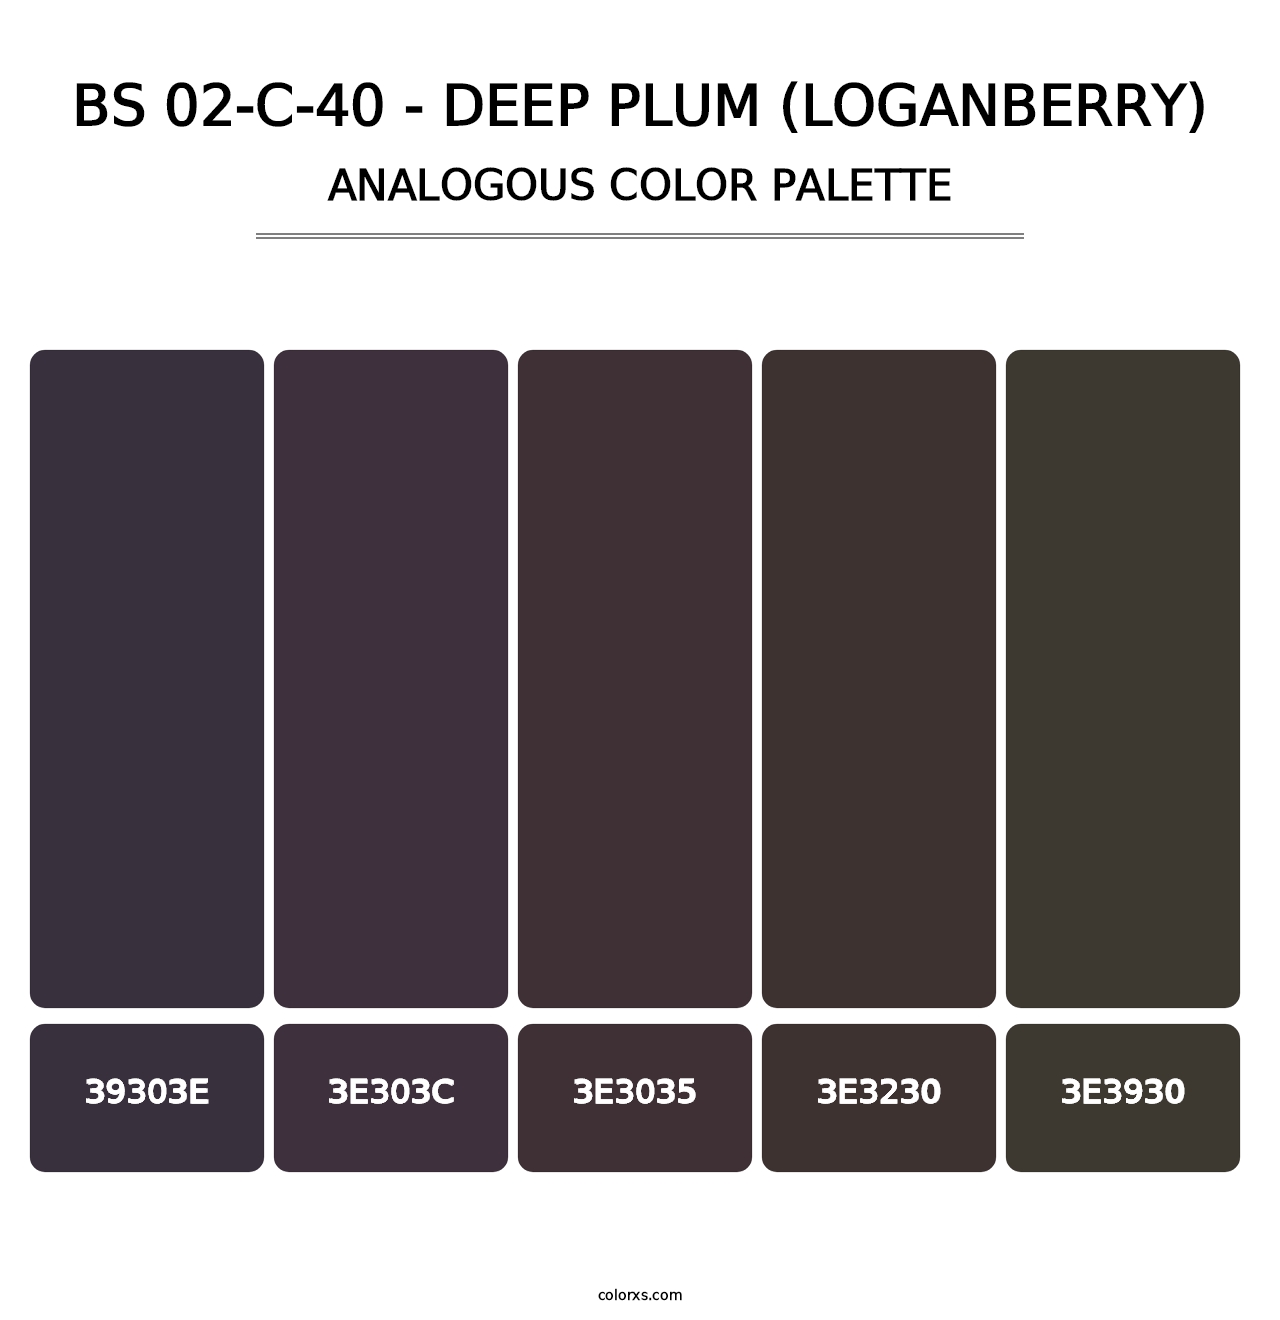 BS 02-C-40 - Deep Plum (Loganberry) - Analogous Color Palette